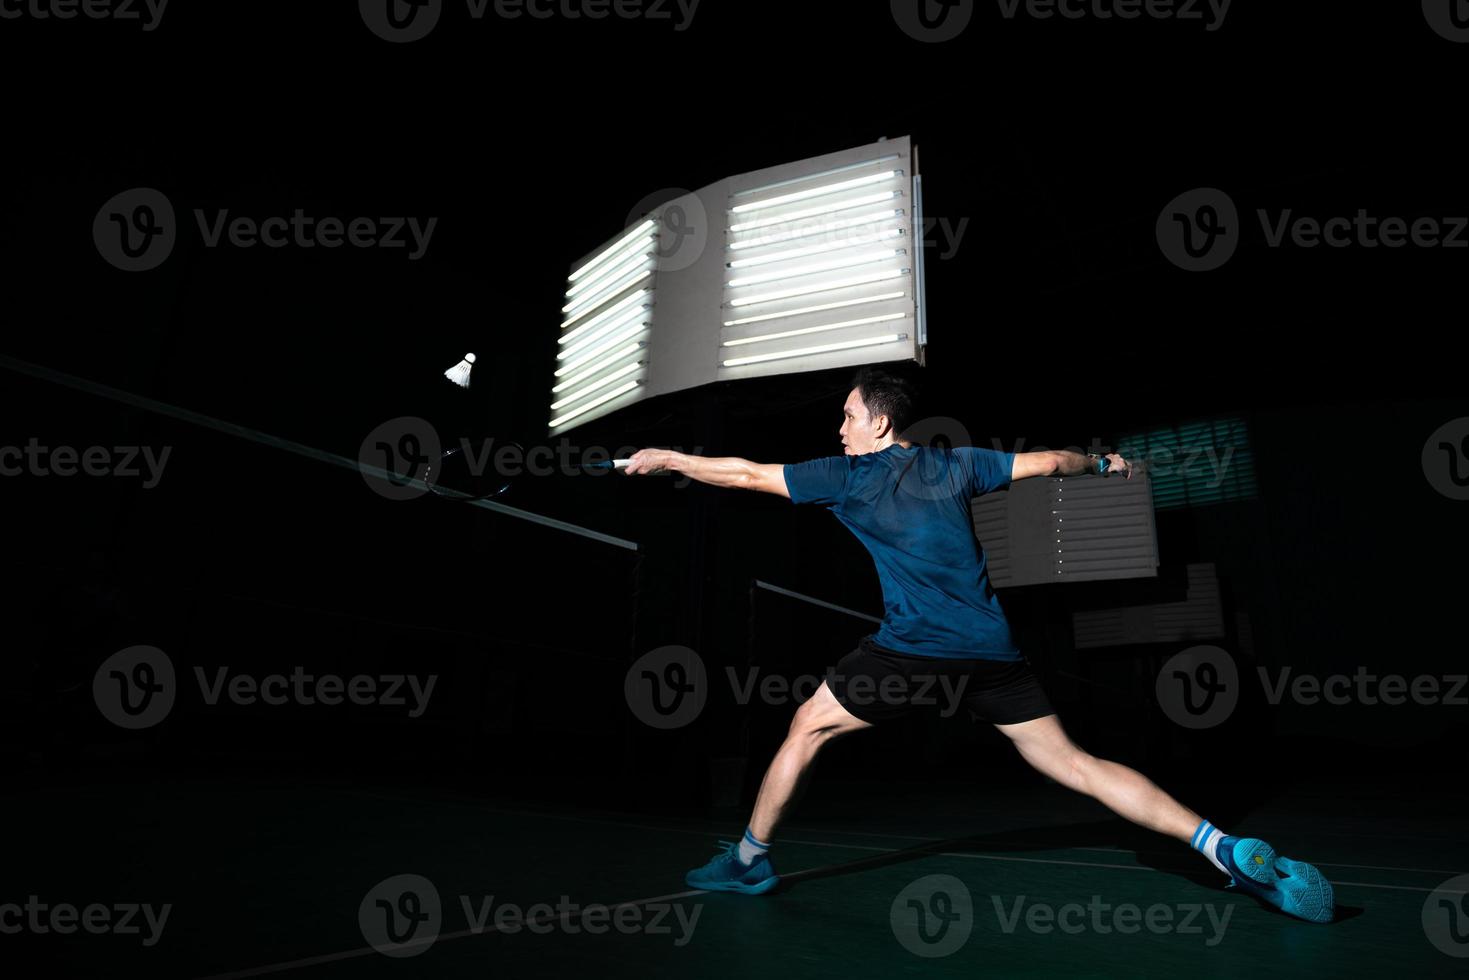 un joueur de badminton professionnel utilise une raquette frappée un coq ou un volant sur le terrain pendant l'échauffement avant la compétition du tournoi en homme seul sur un court intérieur photo